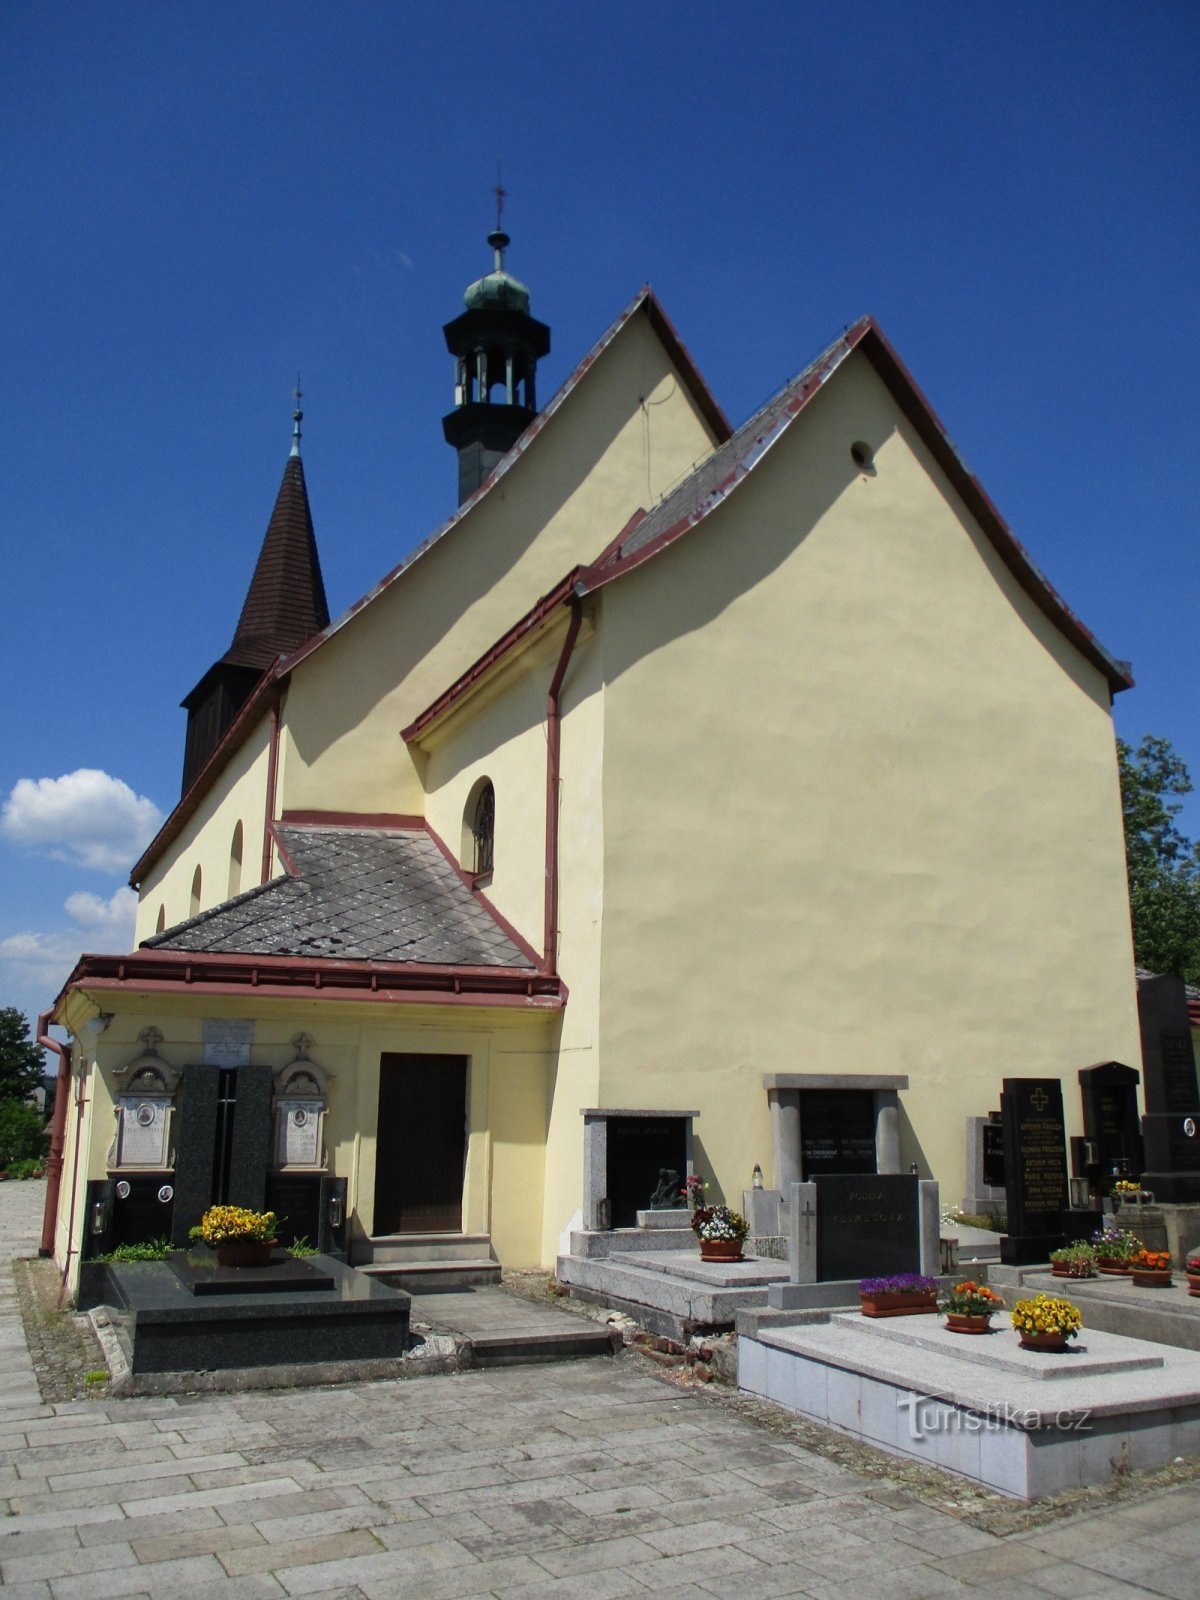 圣教堂施洗约翰（Rtyne in Podkrkonoší，5.6.2019 年 XNUMX 月 XNUMX 日）